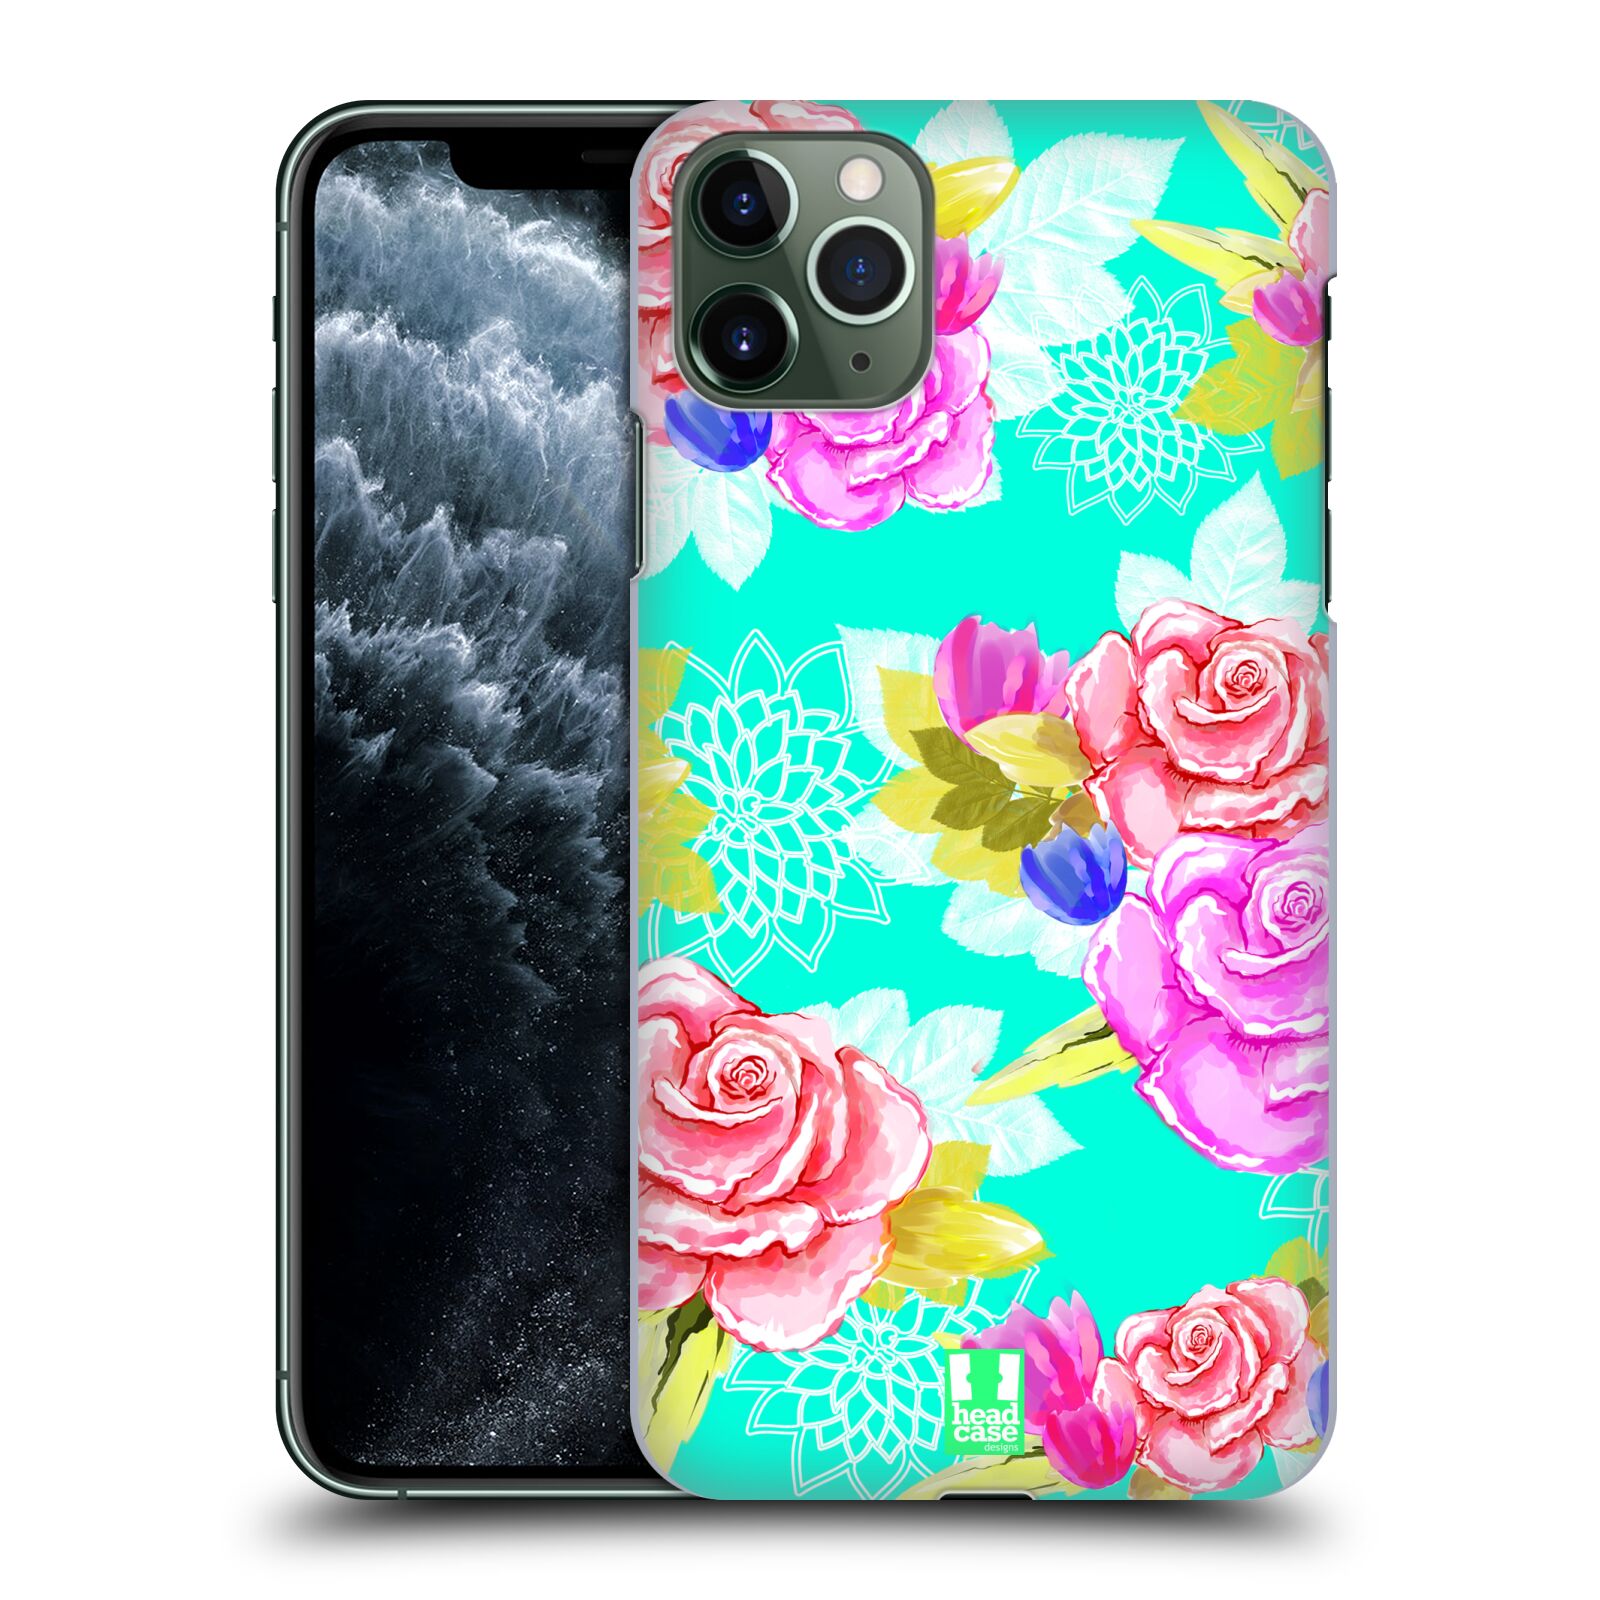 Pouzdro na mobil Apple Iphone 11 PRO MAX - HEAD CASE - vzor Malované květiny barevné AQUA MODRÁ